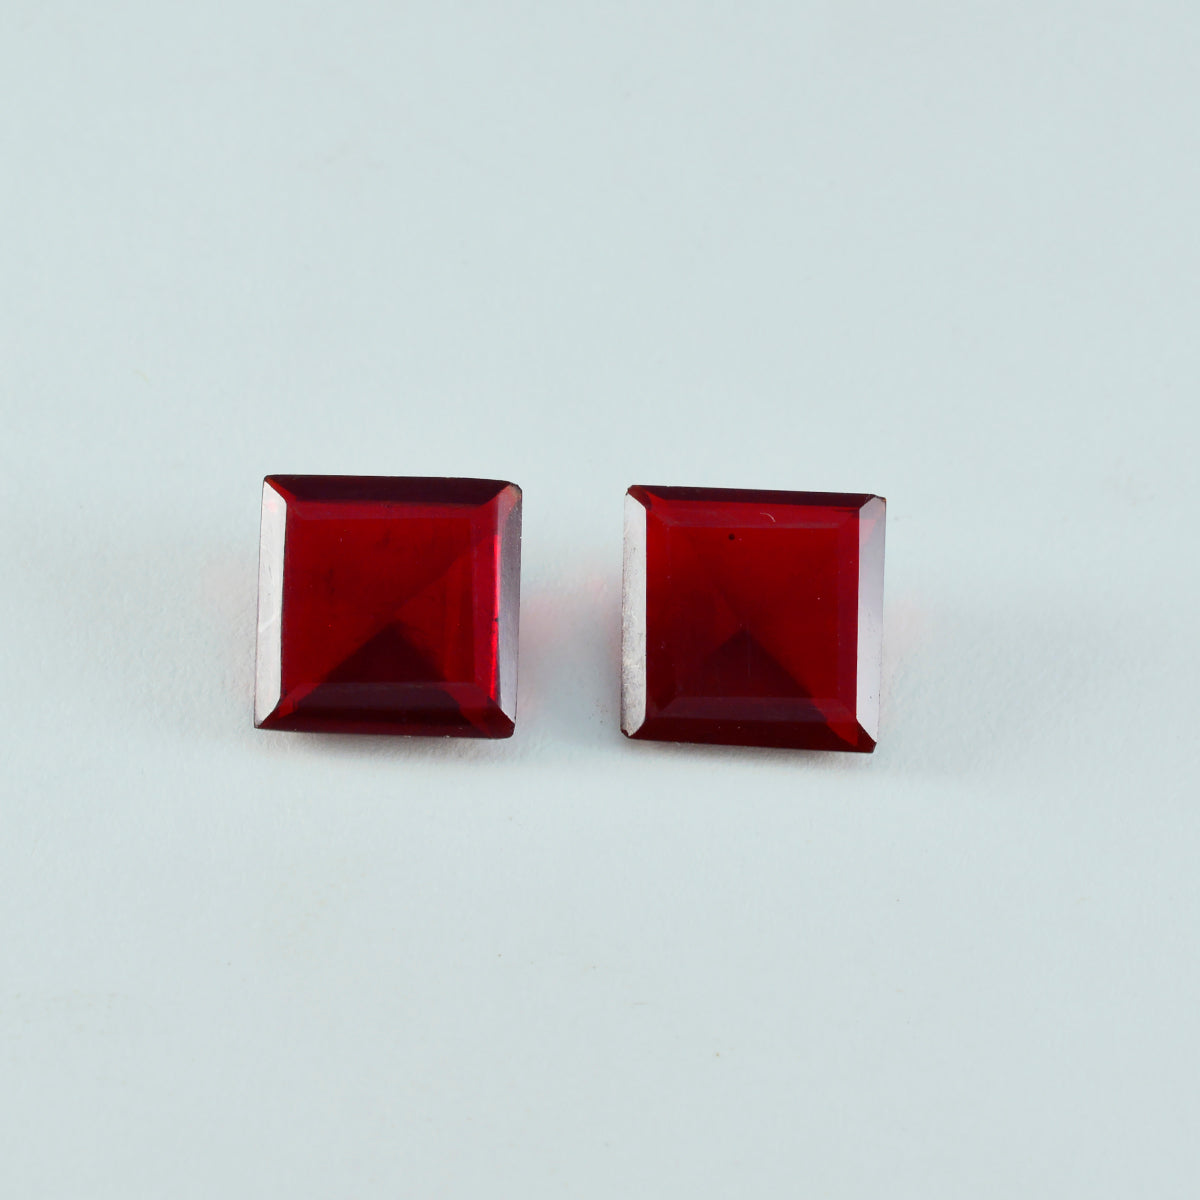 Riyogems 1pc rubis rouge cz facettes 13x13mm forme carrée beauté qualité gemme